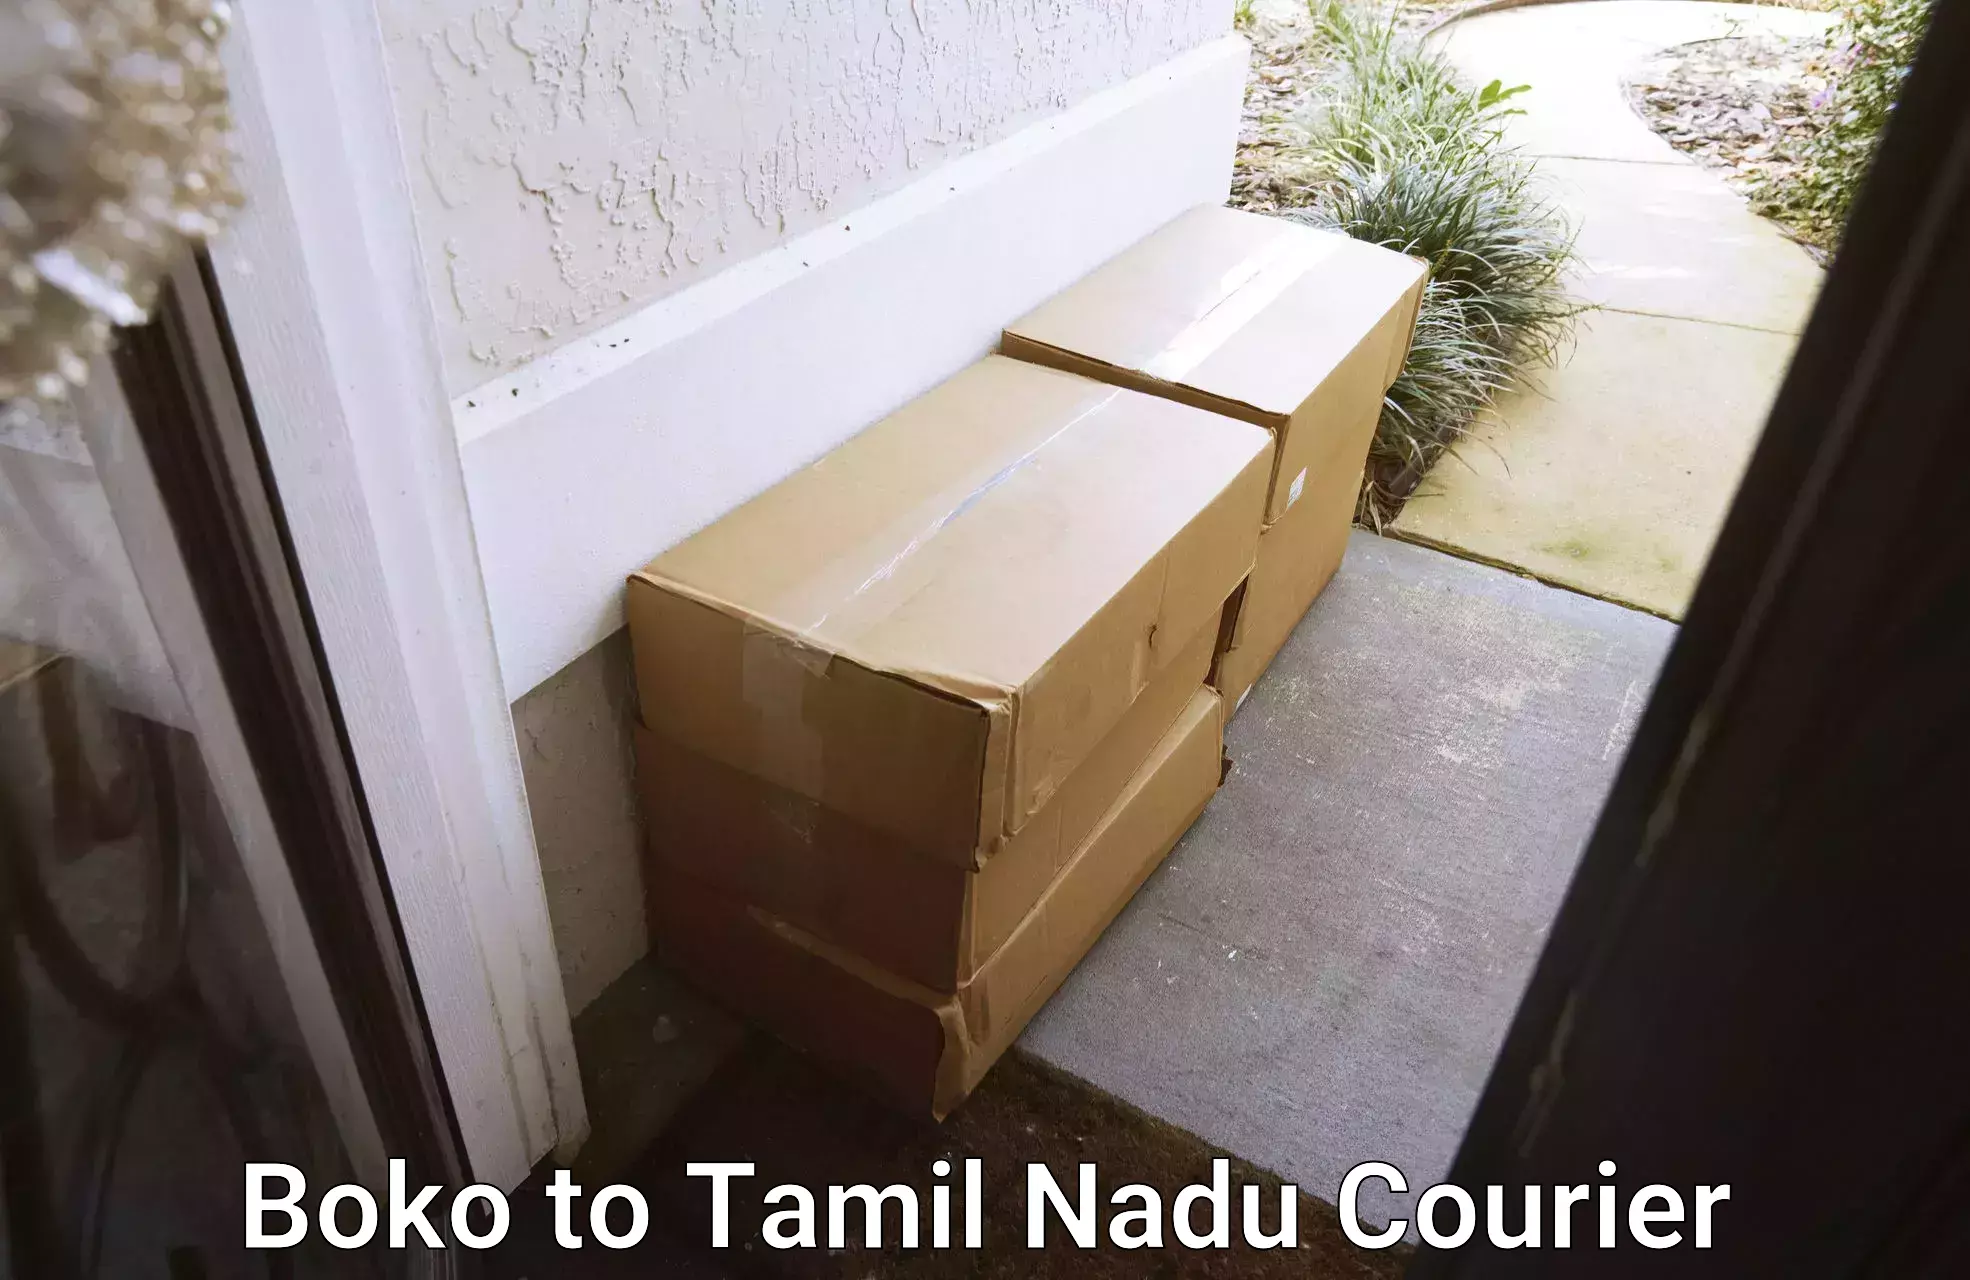 Versatile courier offerings Boko to Tamil Nadu